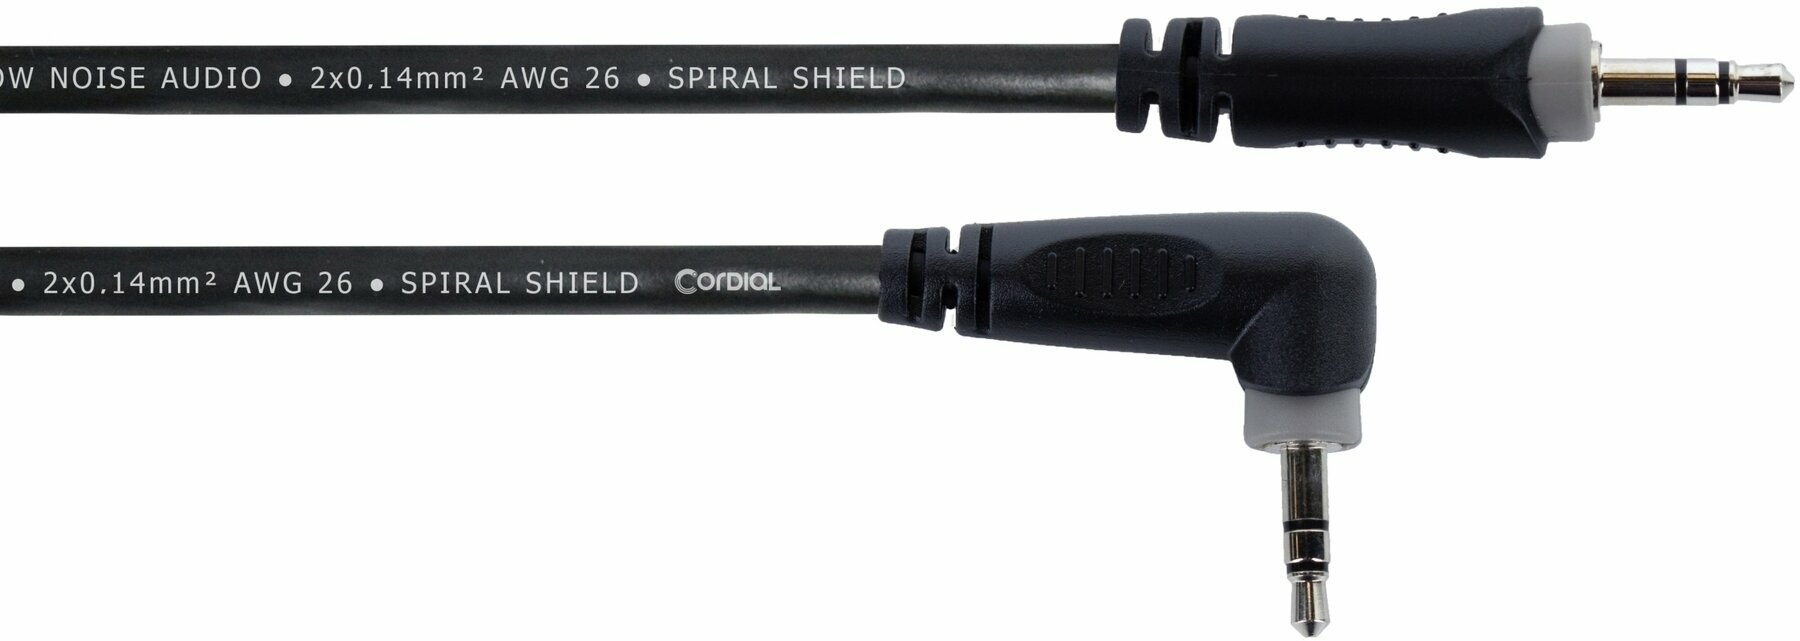 Audió kábel Cordial ES 0,5 WWR 0,5 m Audió kábel